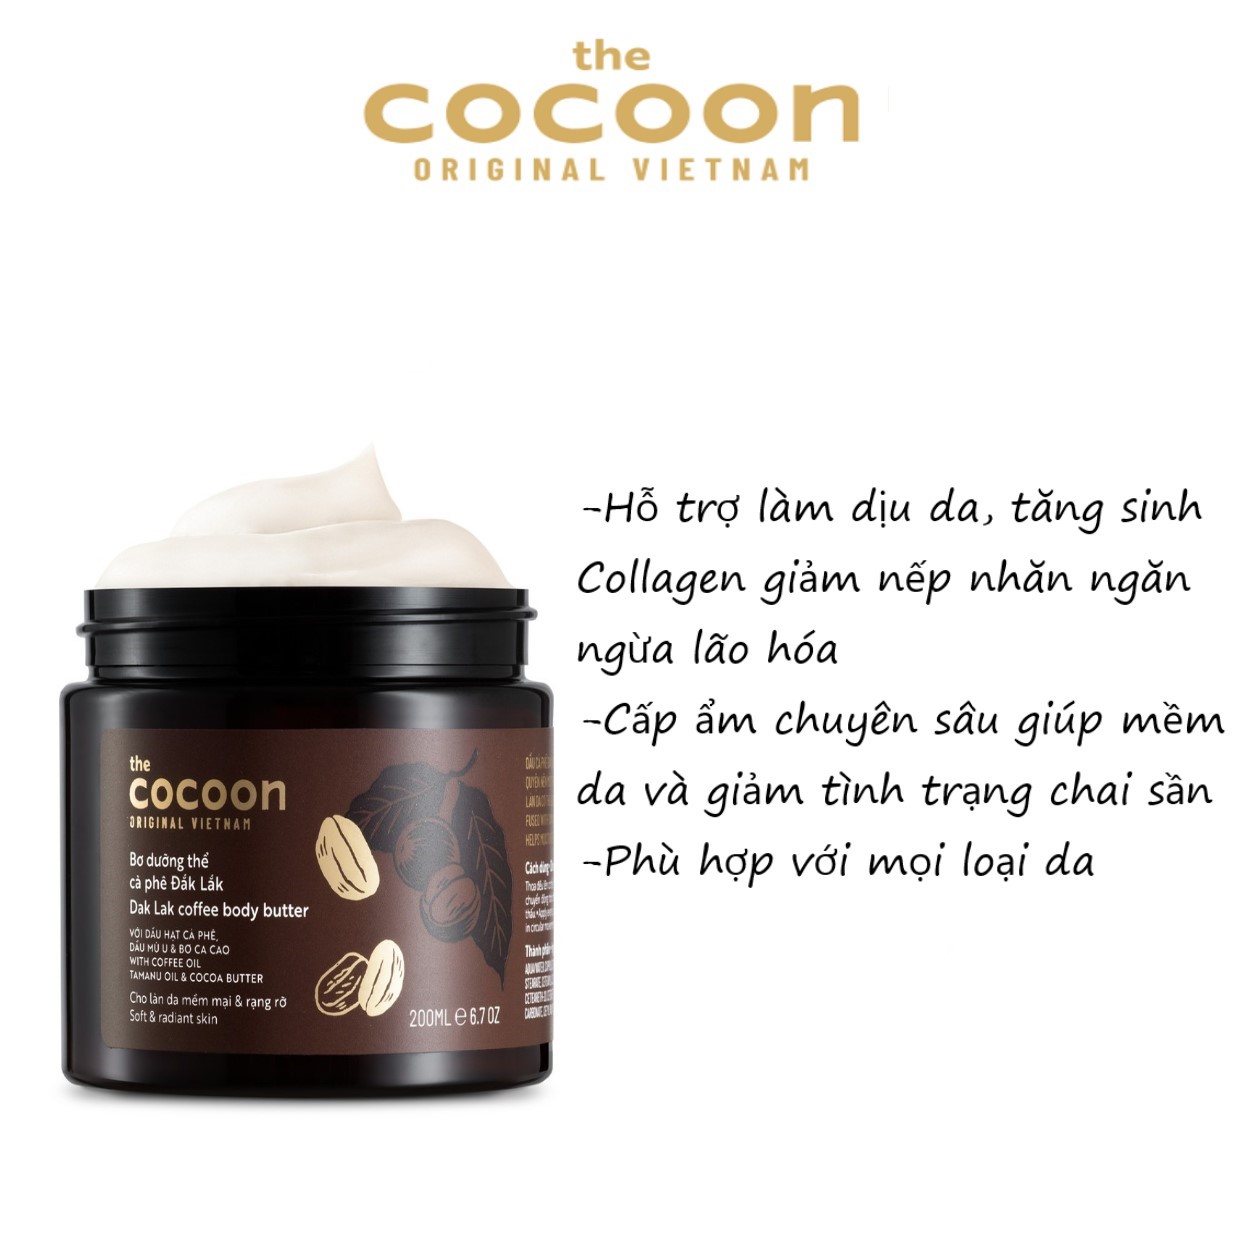 Bơ Dưỡng Thể Cocoon Cà Phê Đắk Lắk 200ml - Dưỡng ẩm toàn thân - Cocoon Dak Lak Coffee Body Butter